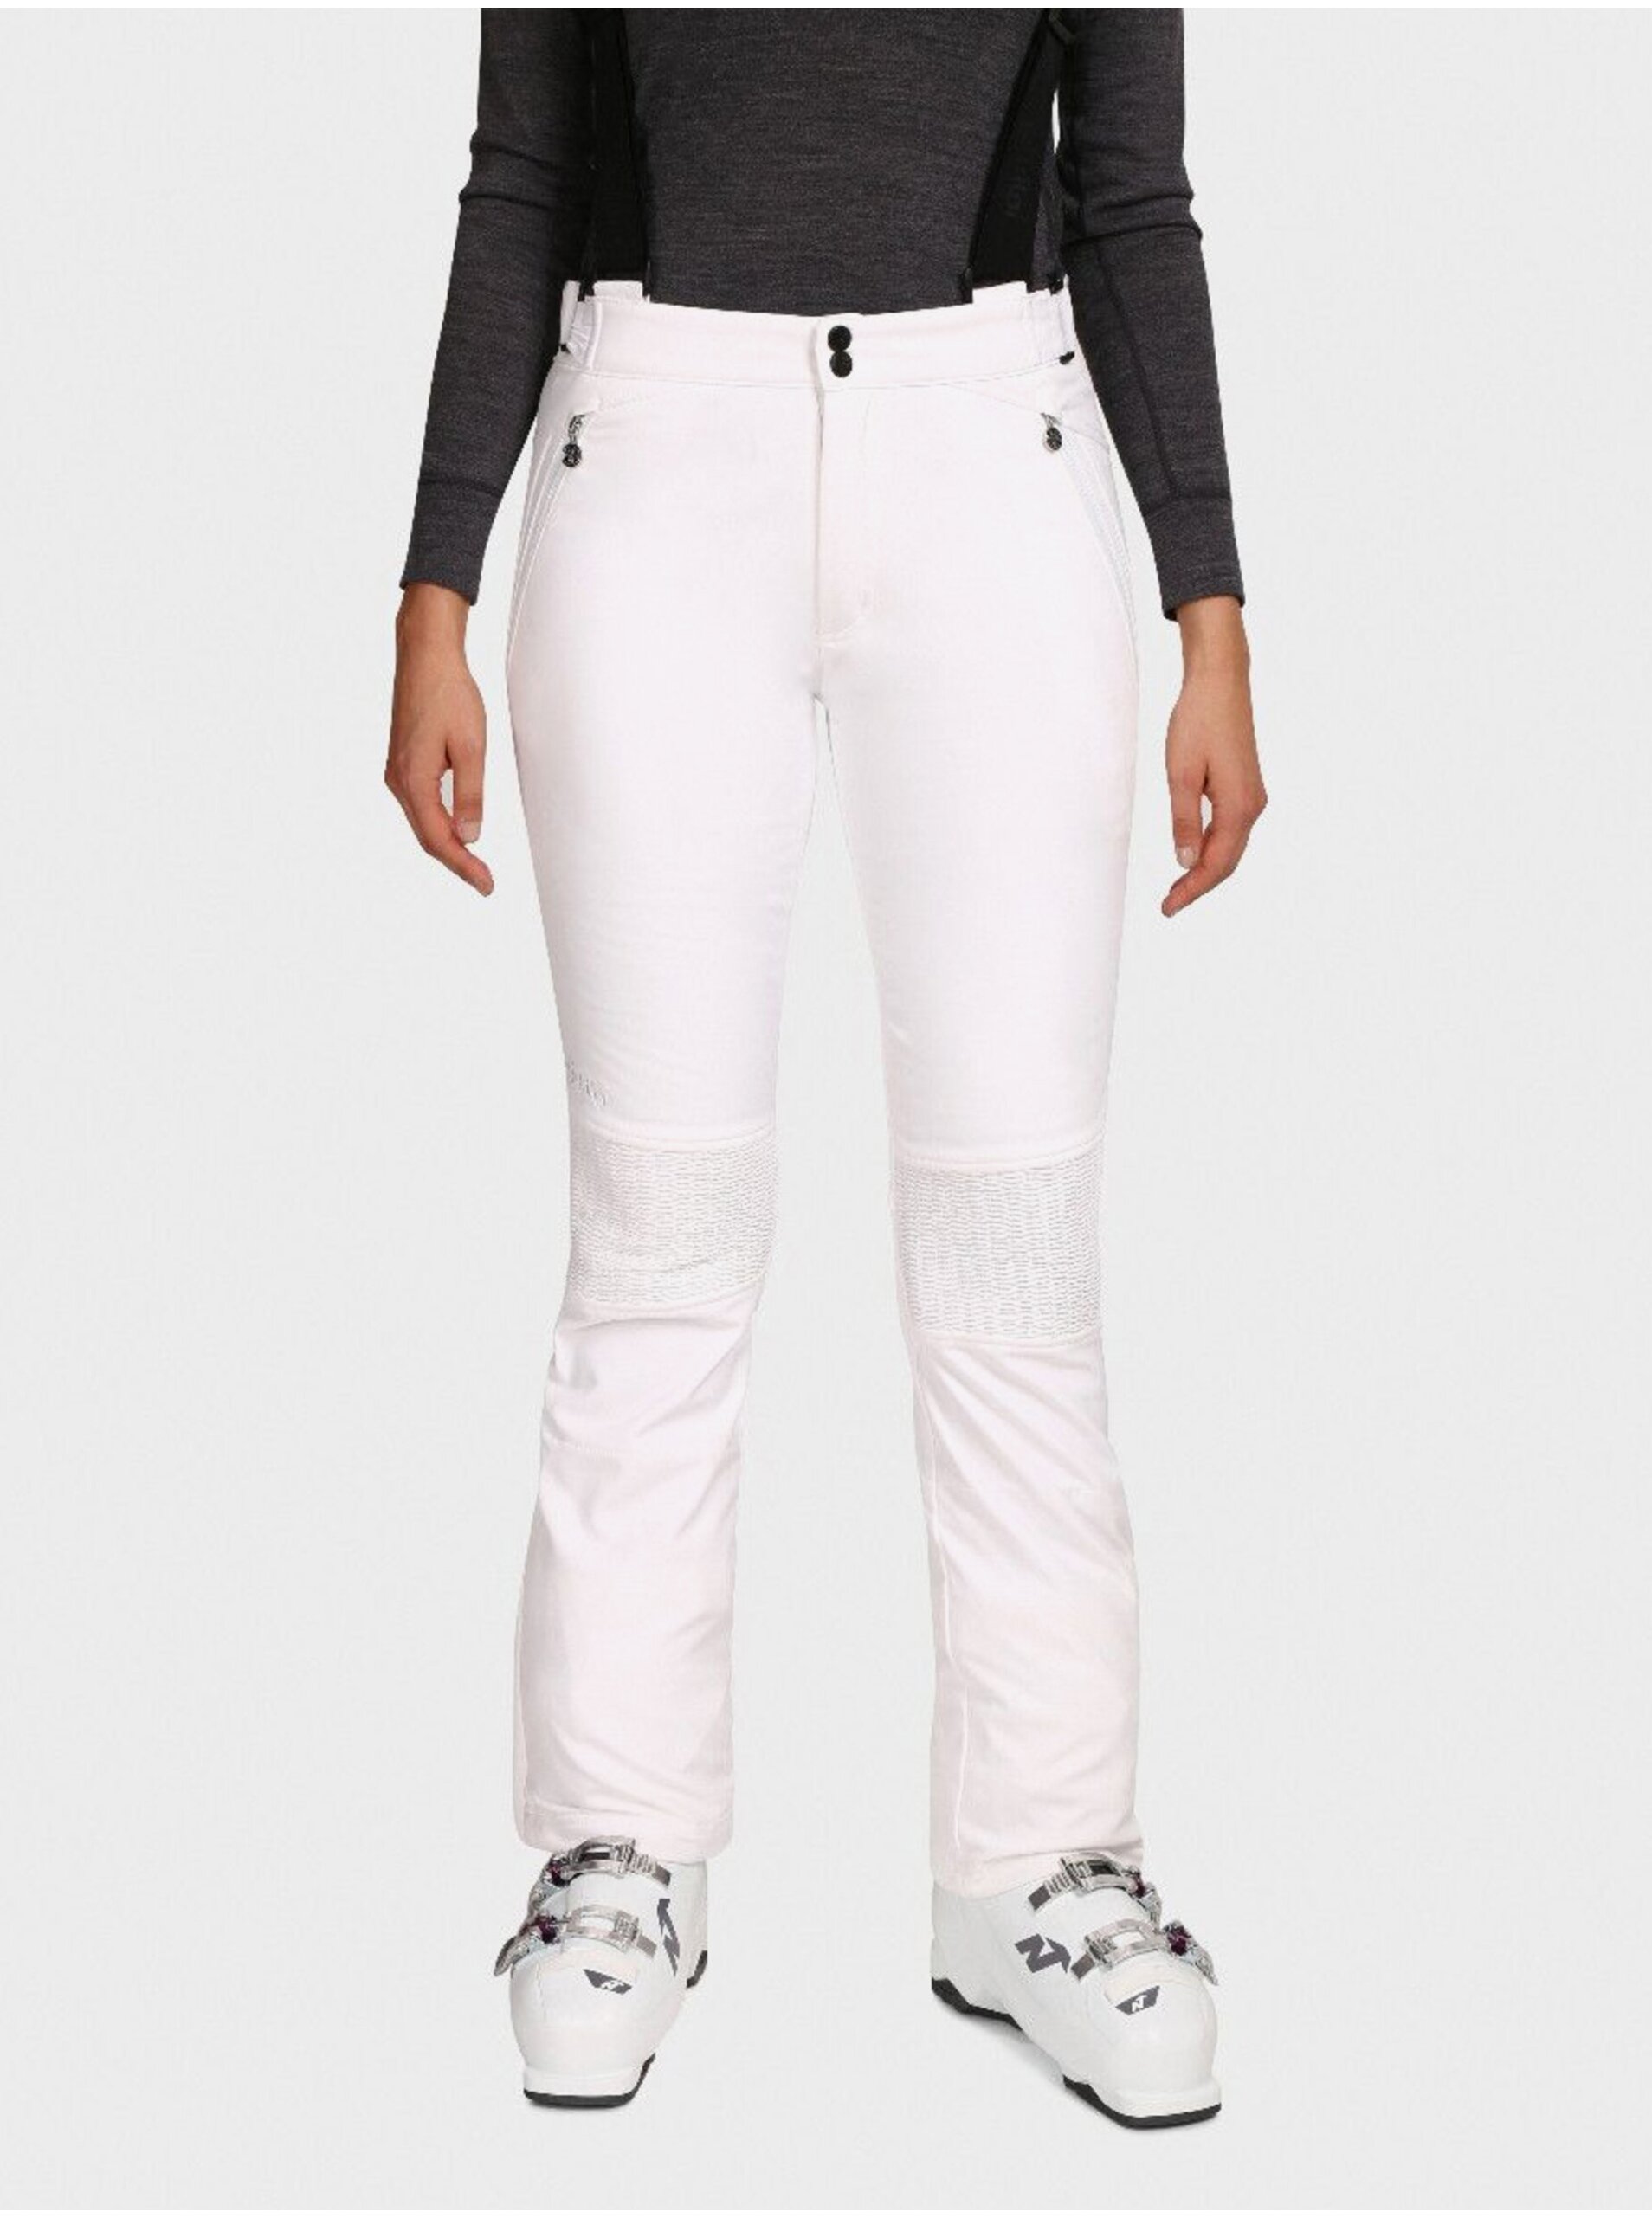 E-shop Biele dámske softshellové lyžiarske nohavice Kilpi DIONE